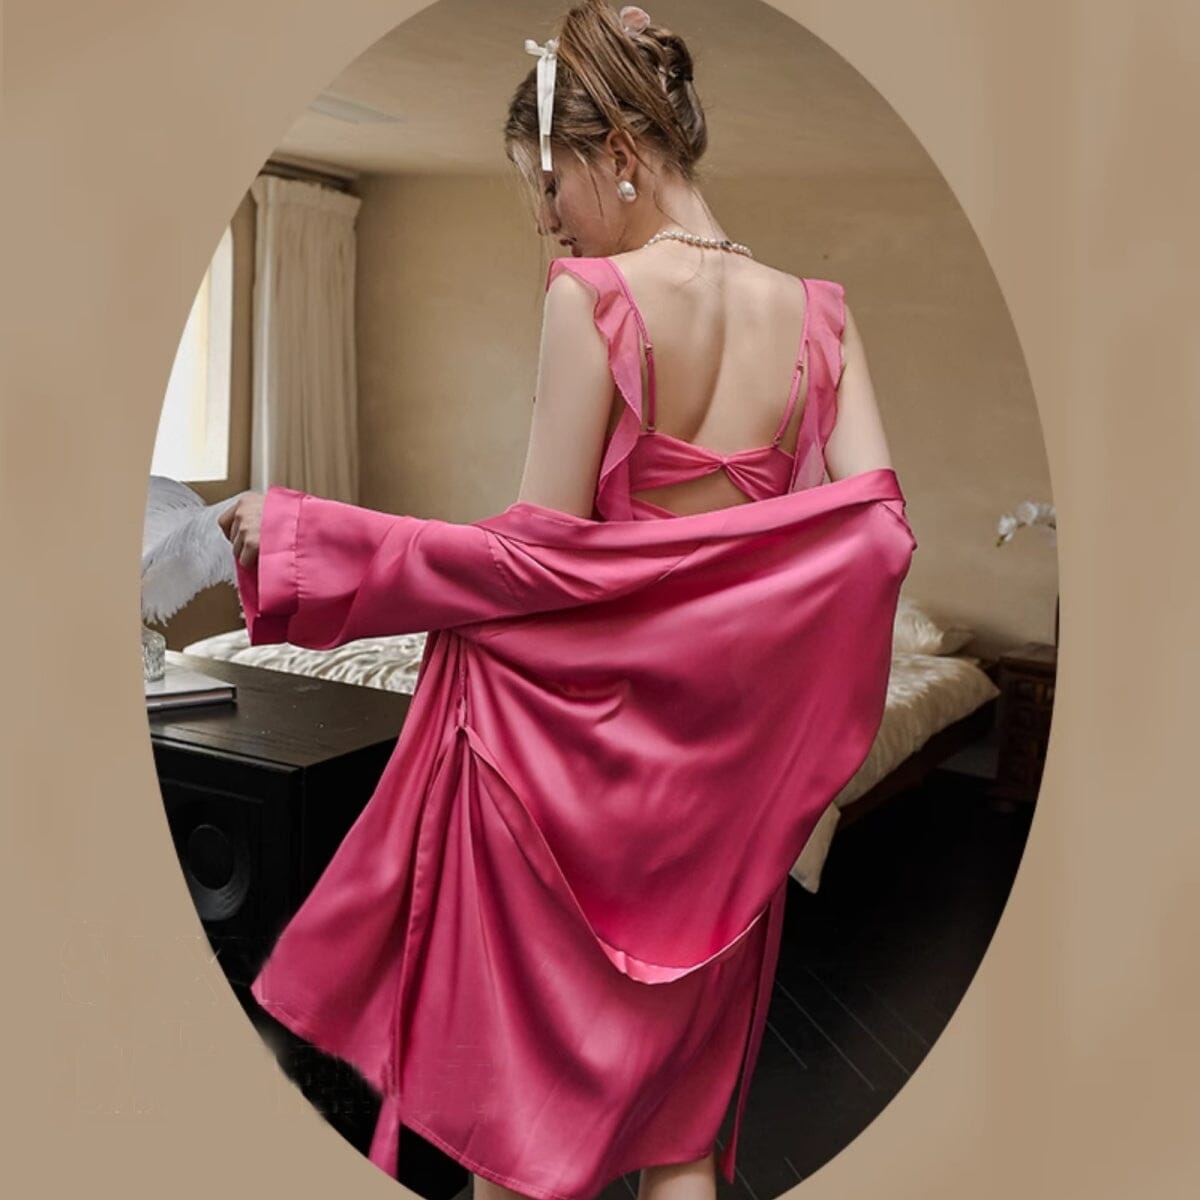 Tanya satin robe Intimates LOVEFREYA Free size Rose pink Satin